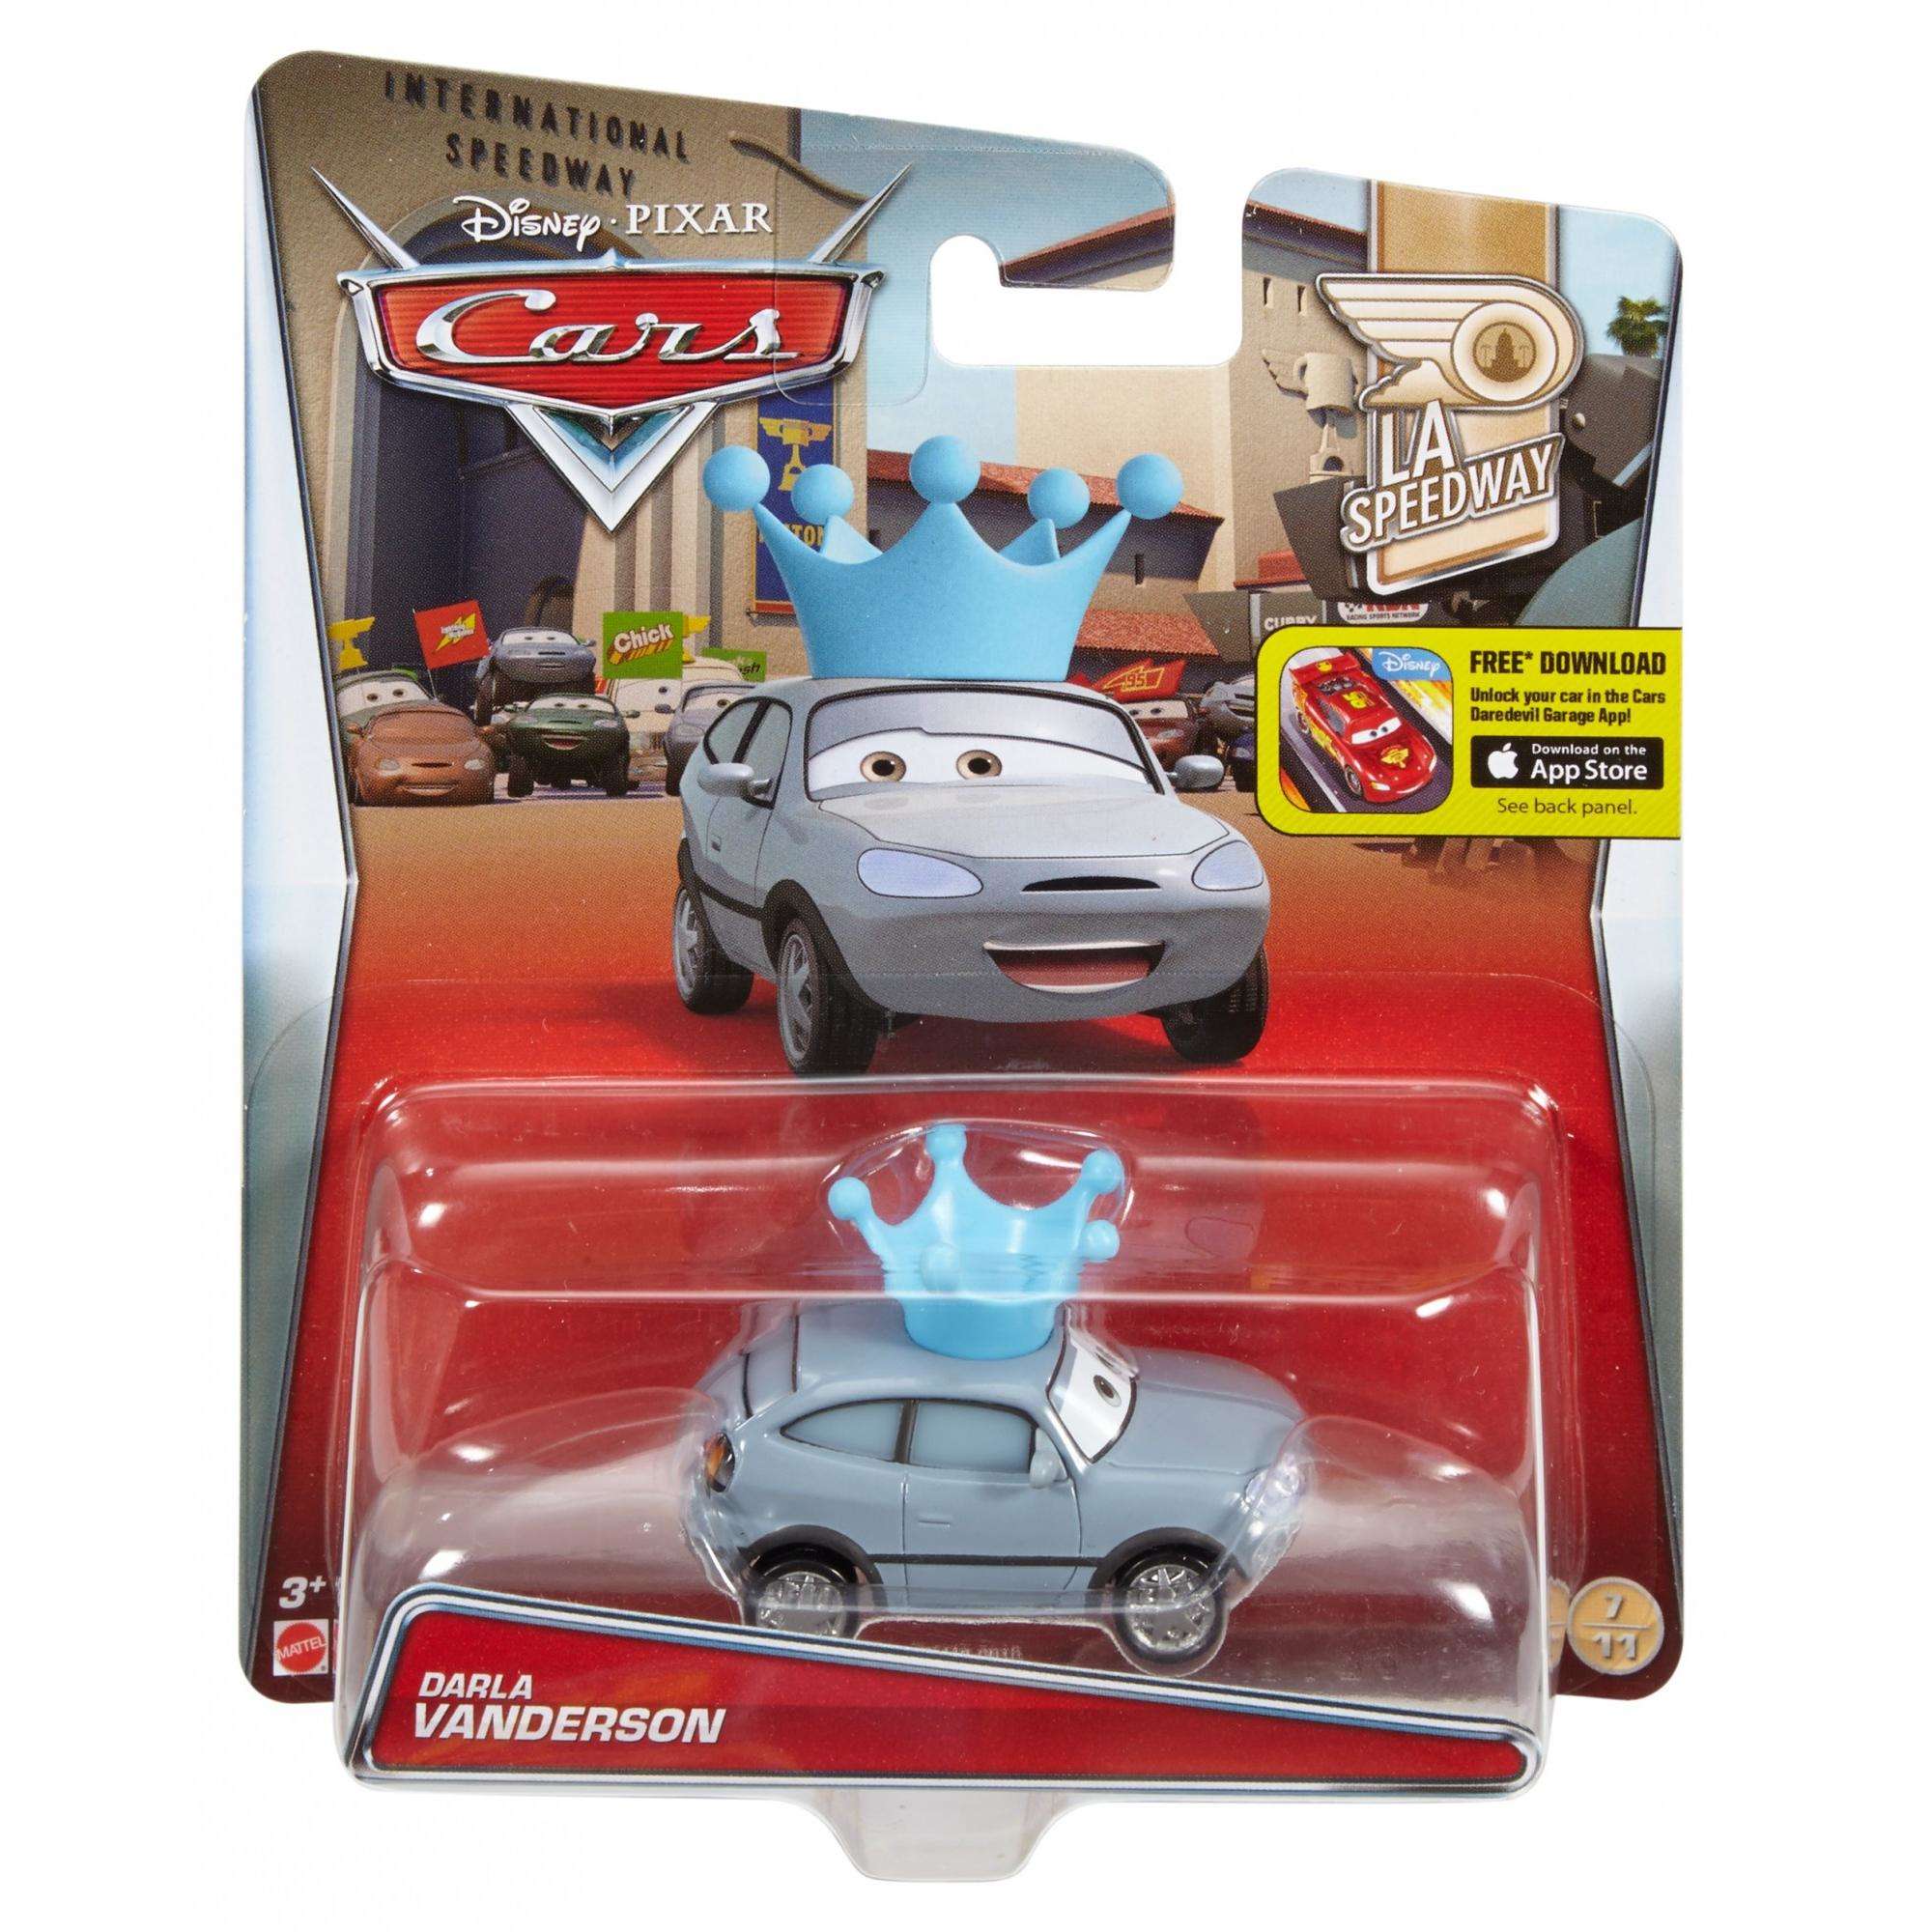 Disney/Pixar Cars Darla Vanderson Die-Cast Vehicle - image 4 of 5